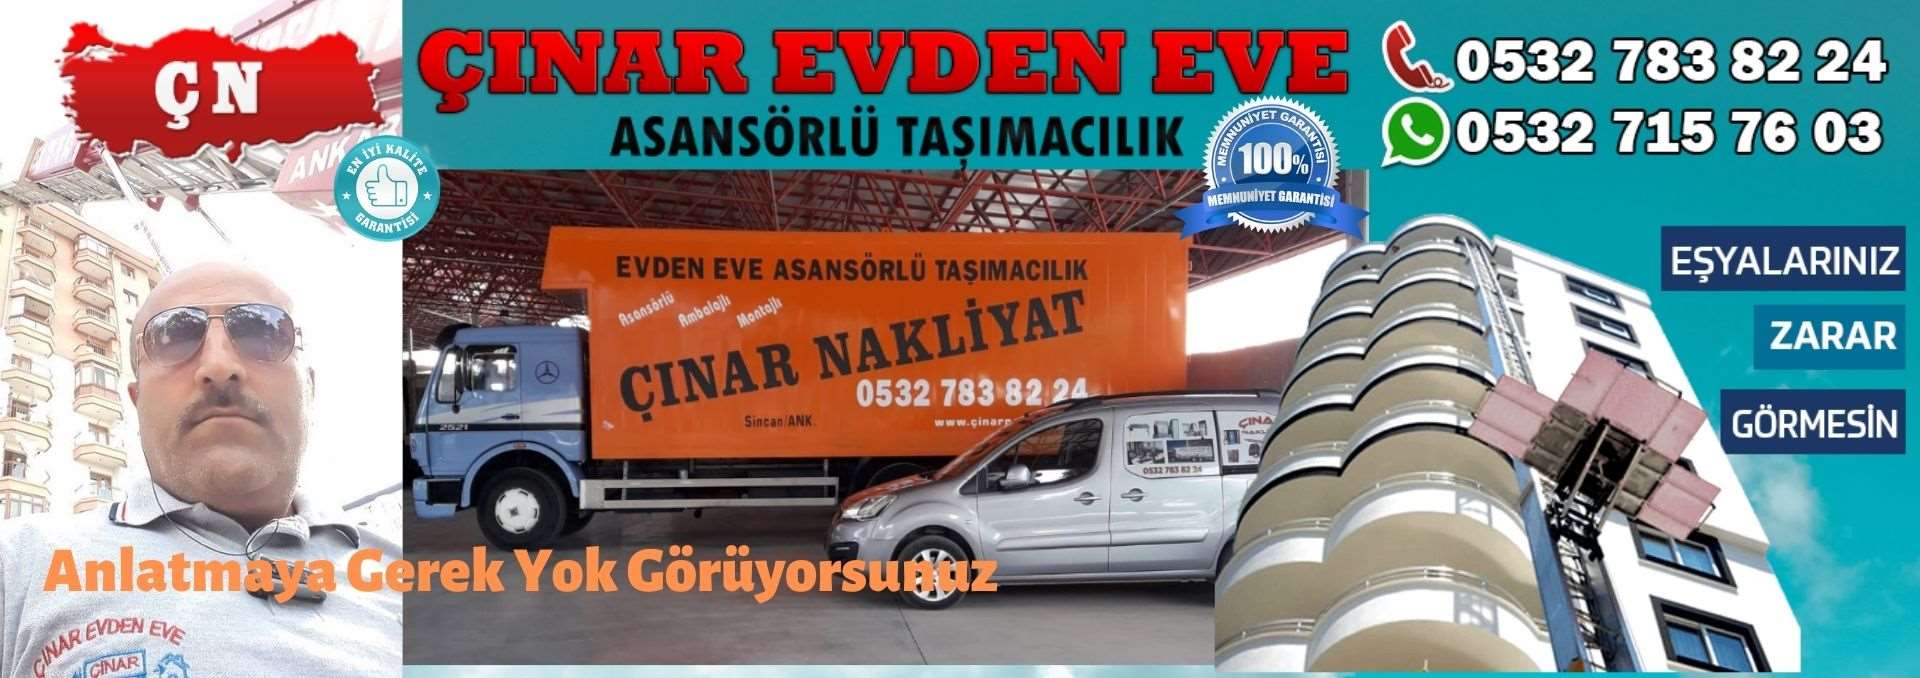 Ankara  Evden Eve Asansörlü Ev Eşyası Taşıma 0532 715 76 03